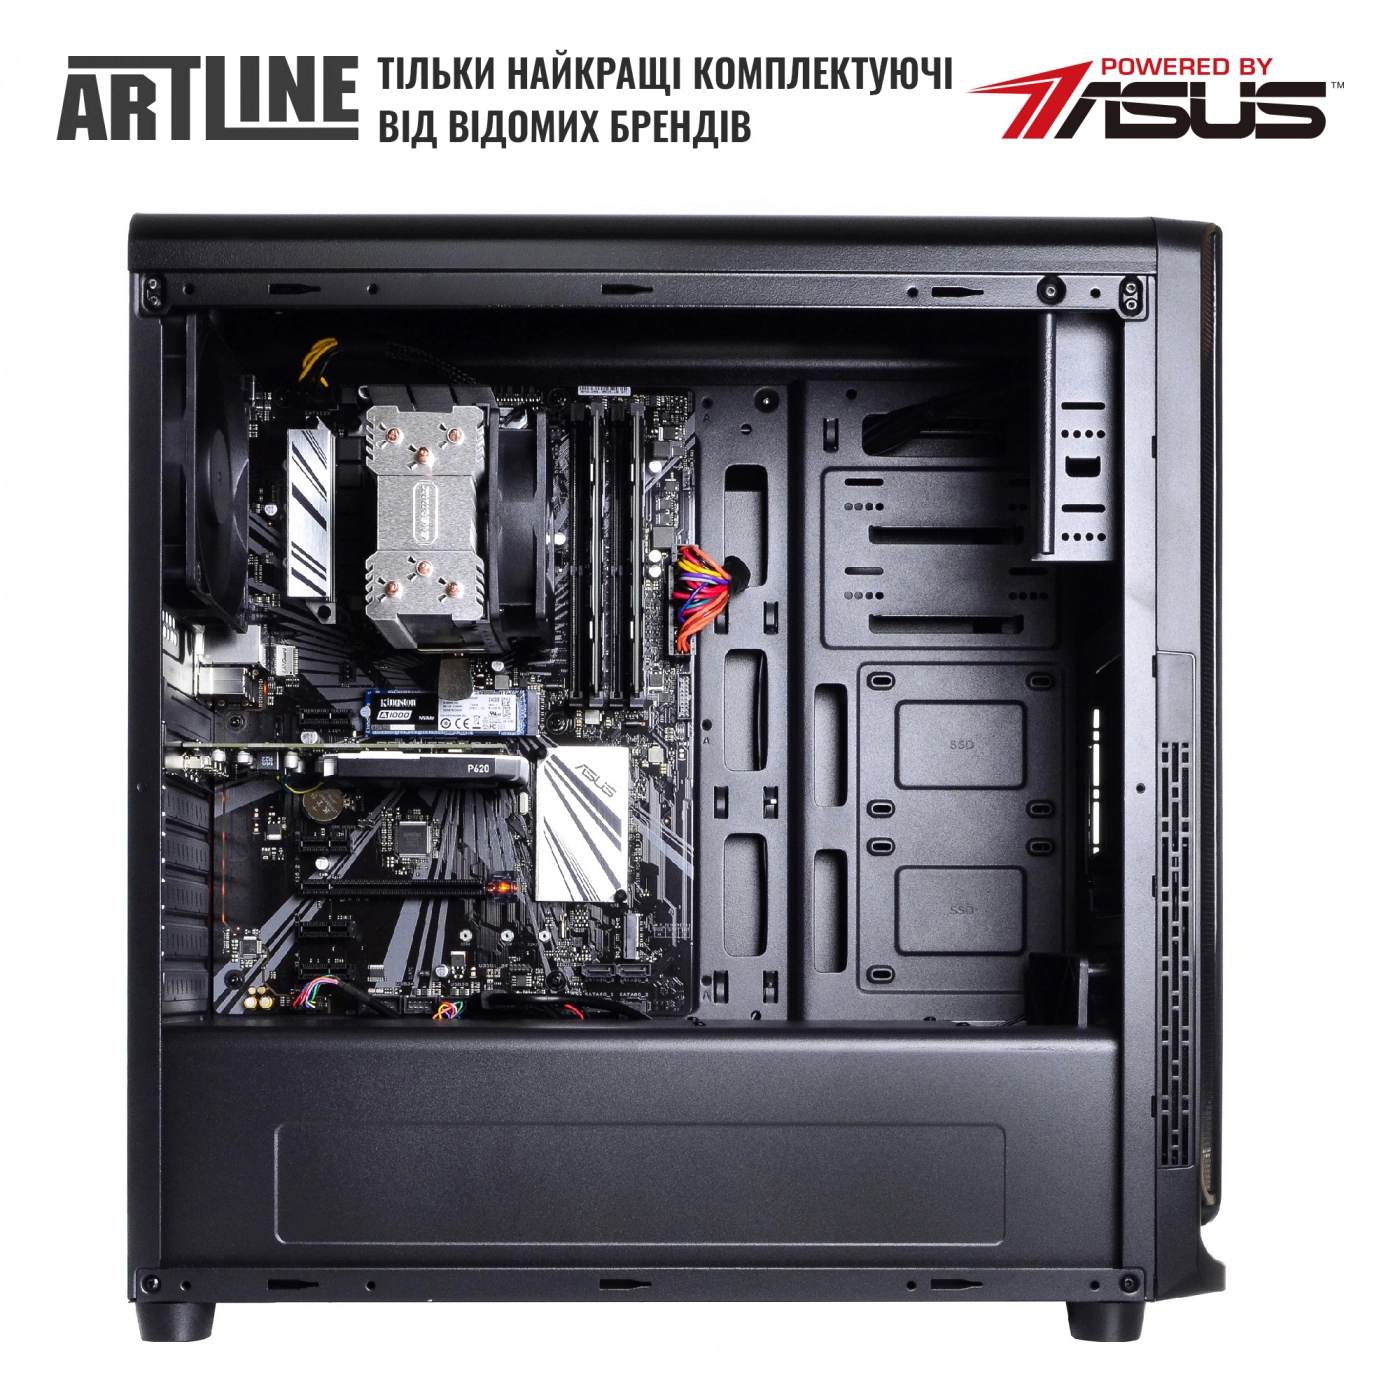 Купить Сервер ARTLINE Business T25v29 - фото 5